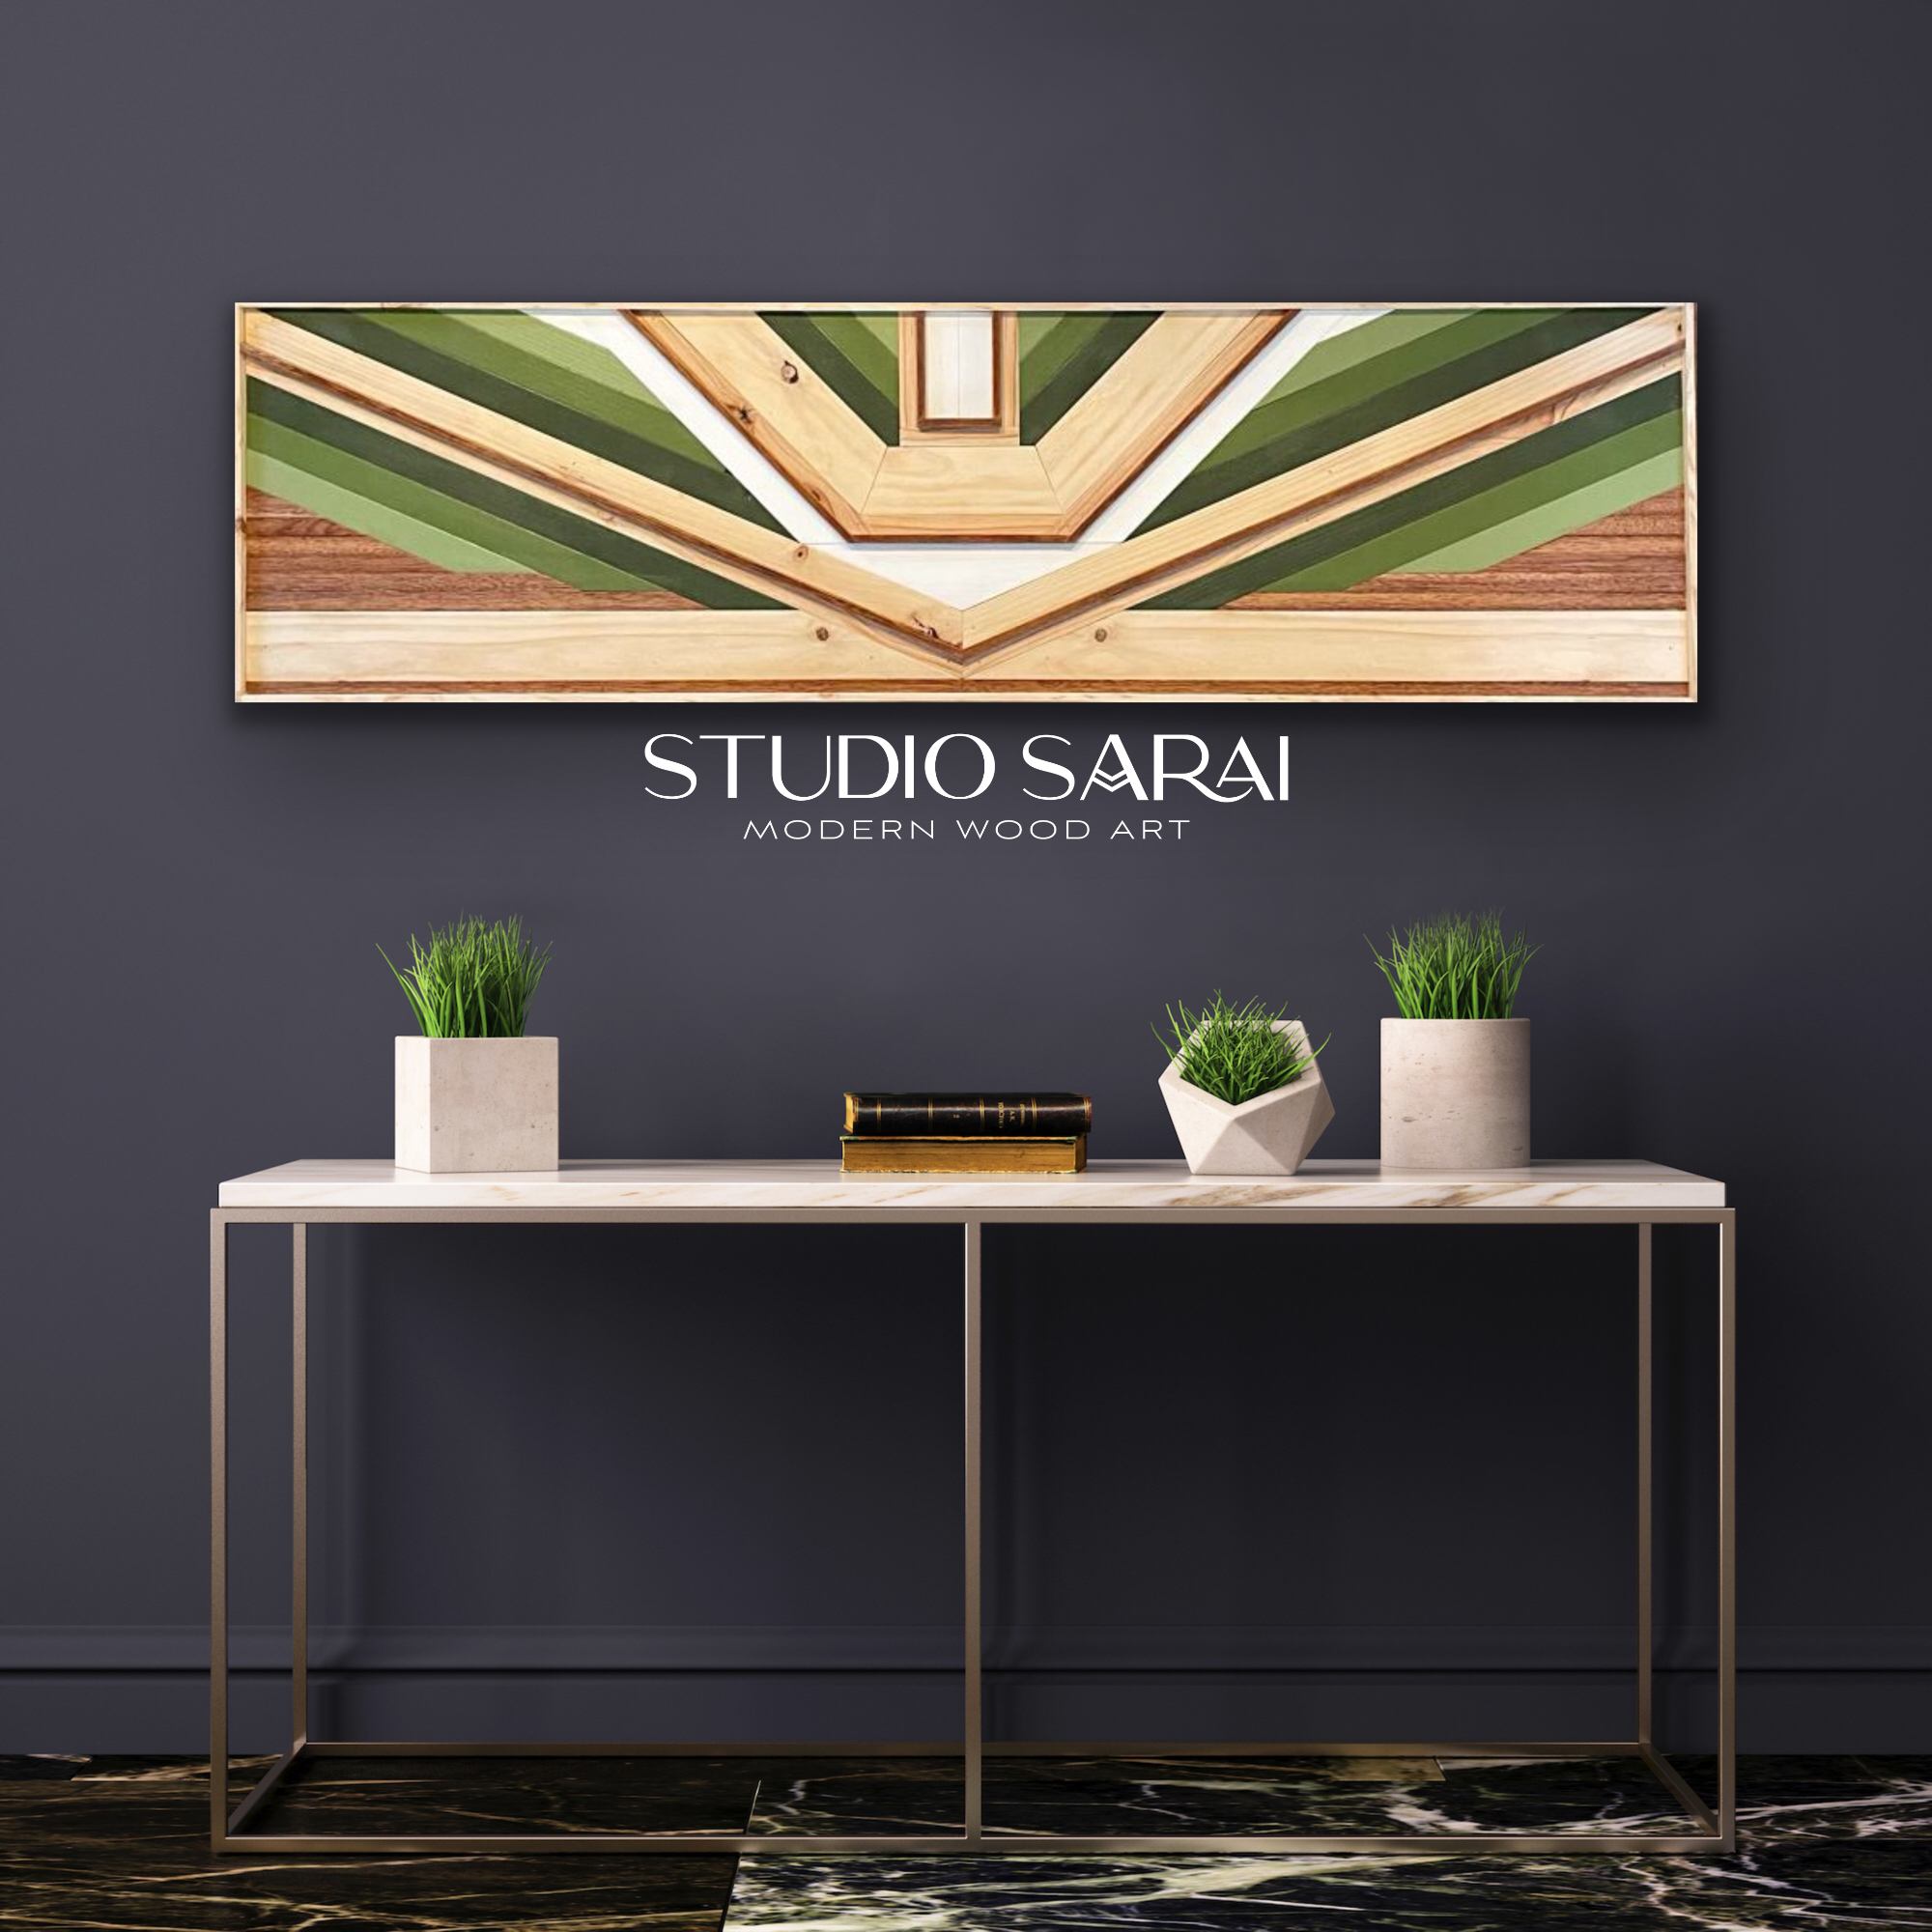 Buy Wood Mosaic Online at Studio Sarai